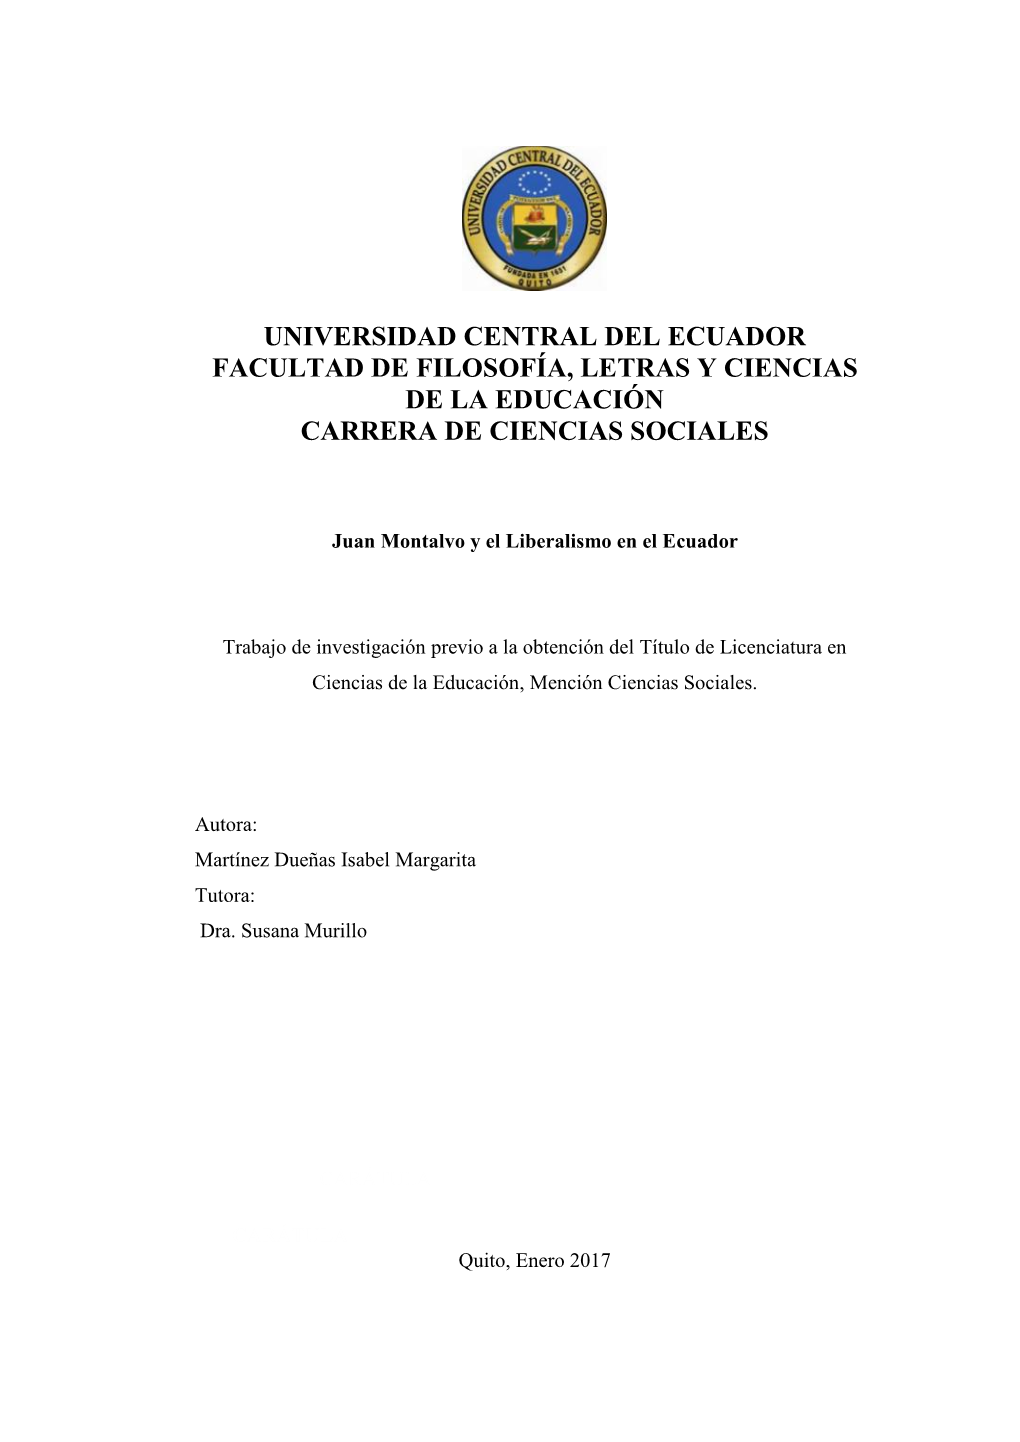 Juan Montalvo Y El Liberalismo En El Ecuador